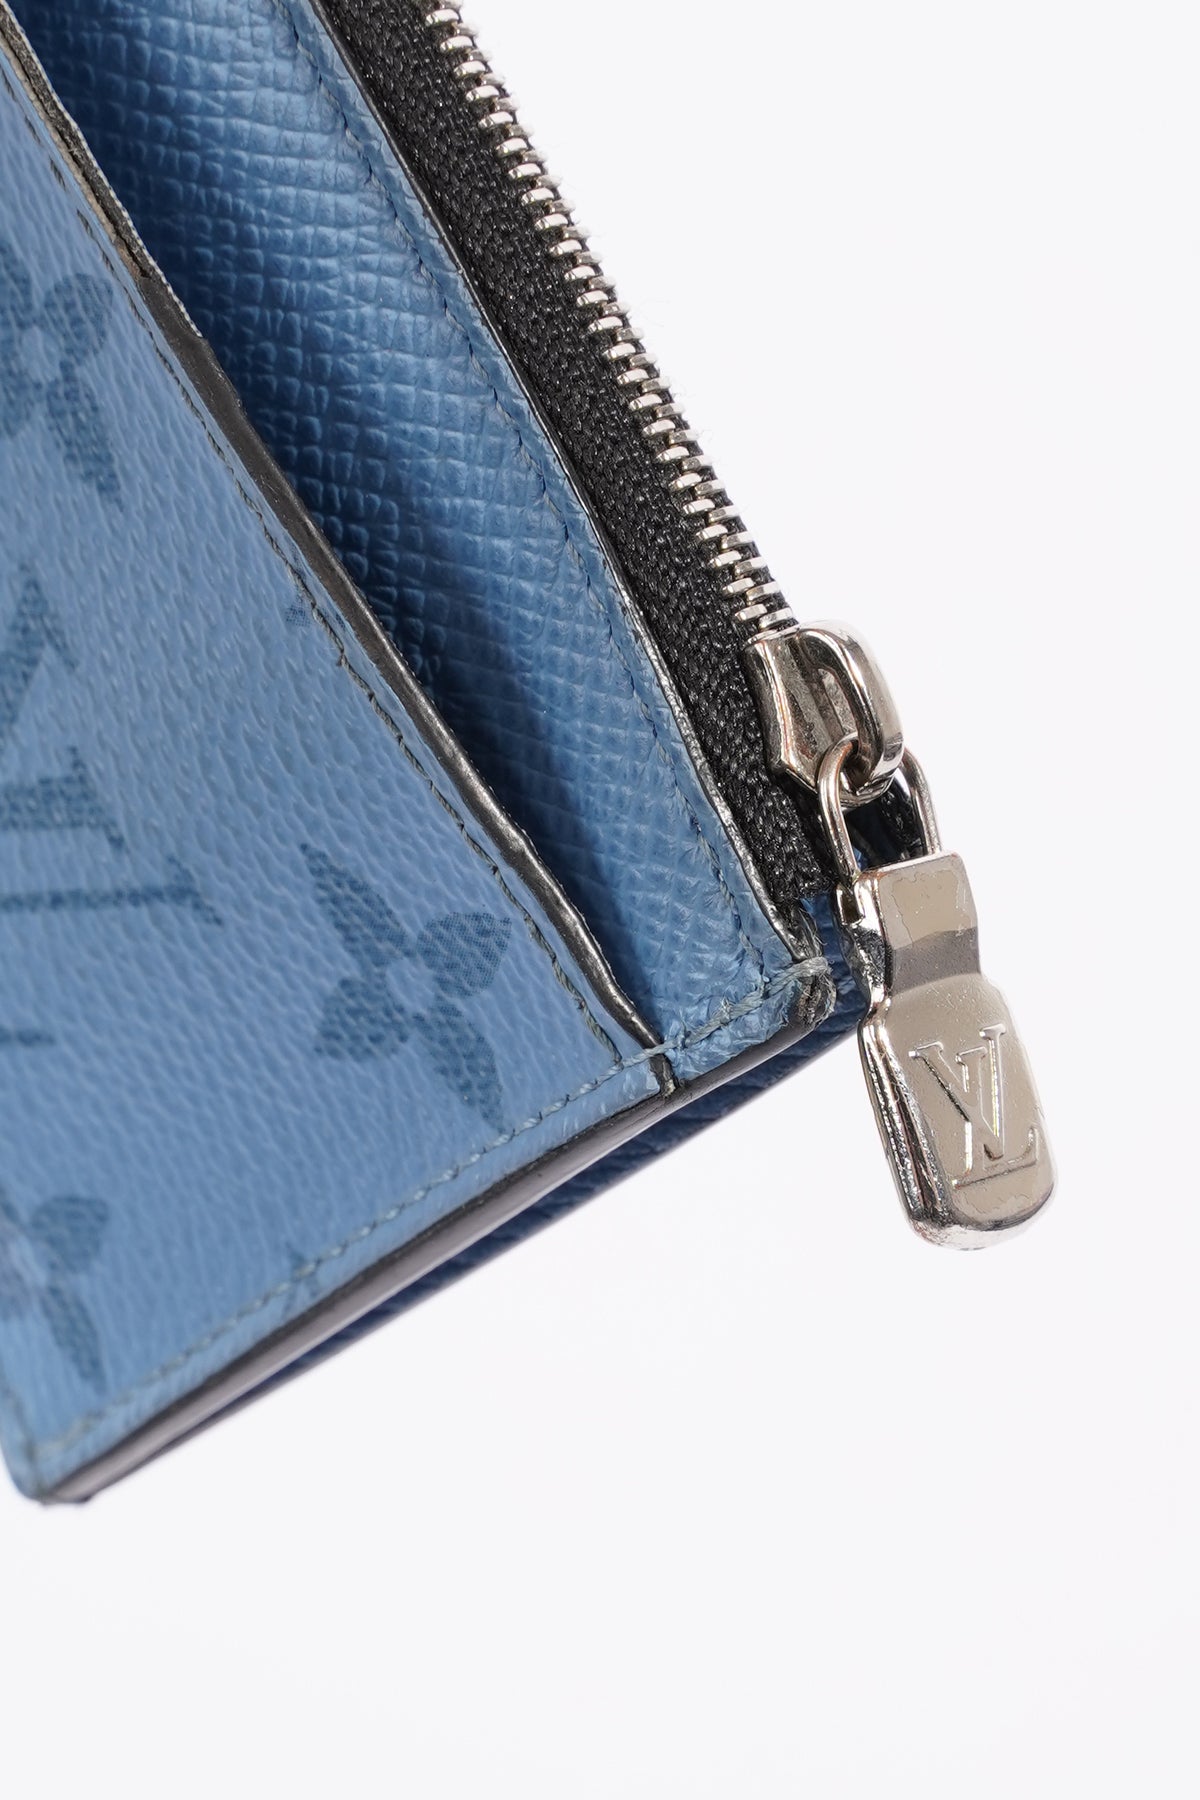 Louis Vuitton Blue Lagoon Monogram Taigarama Coin Card Holder